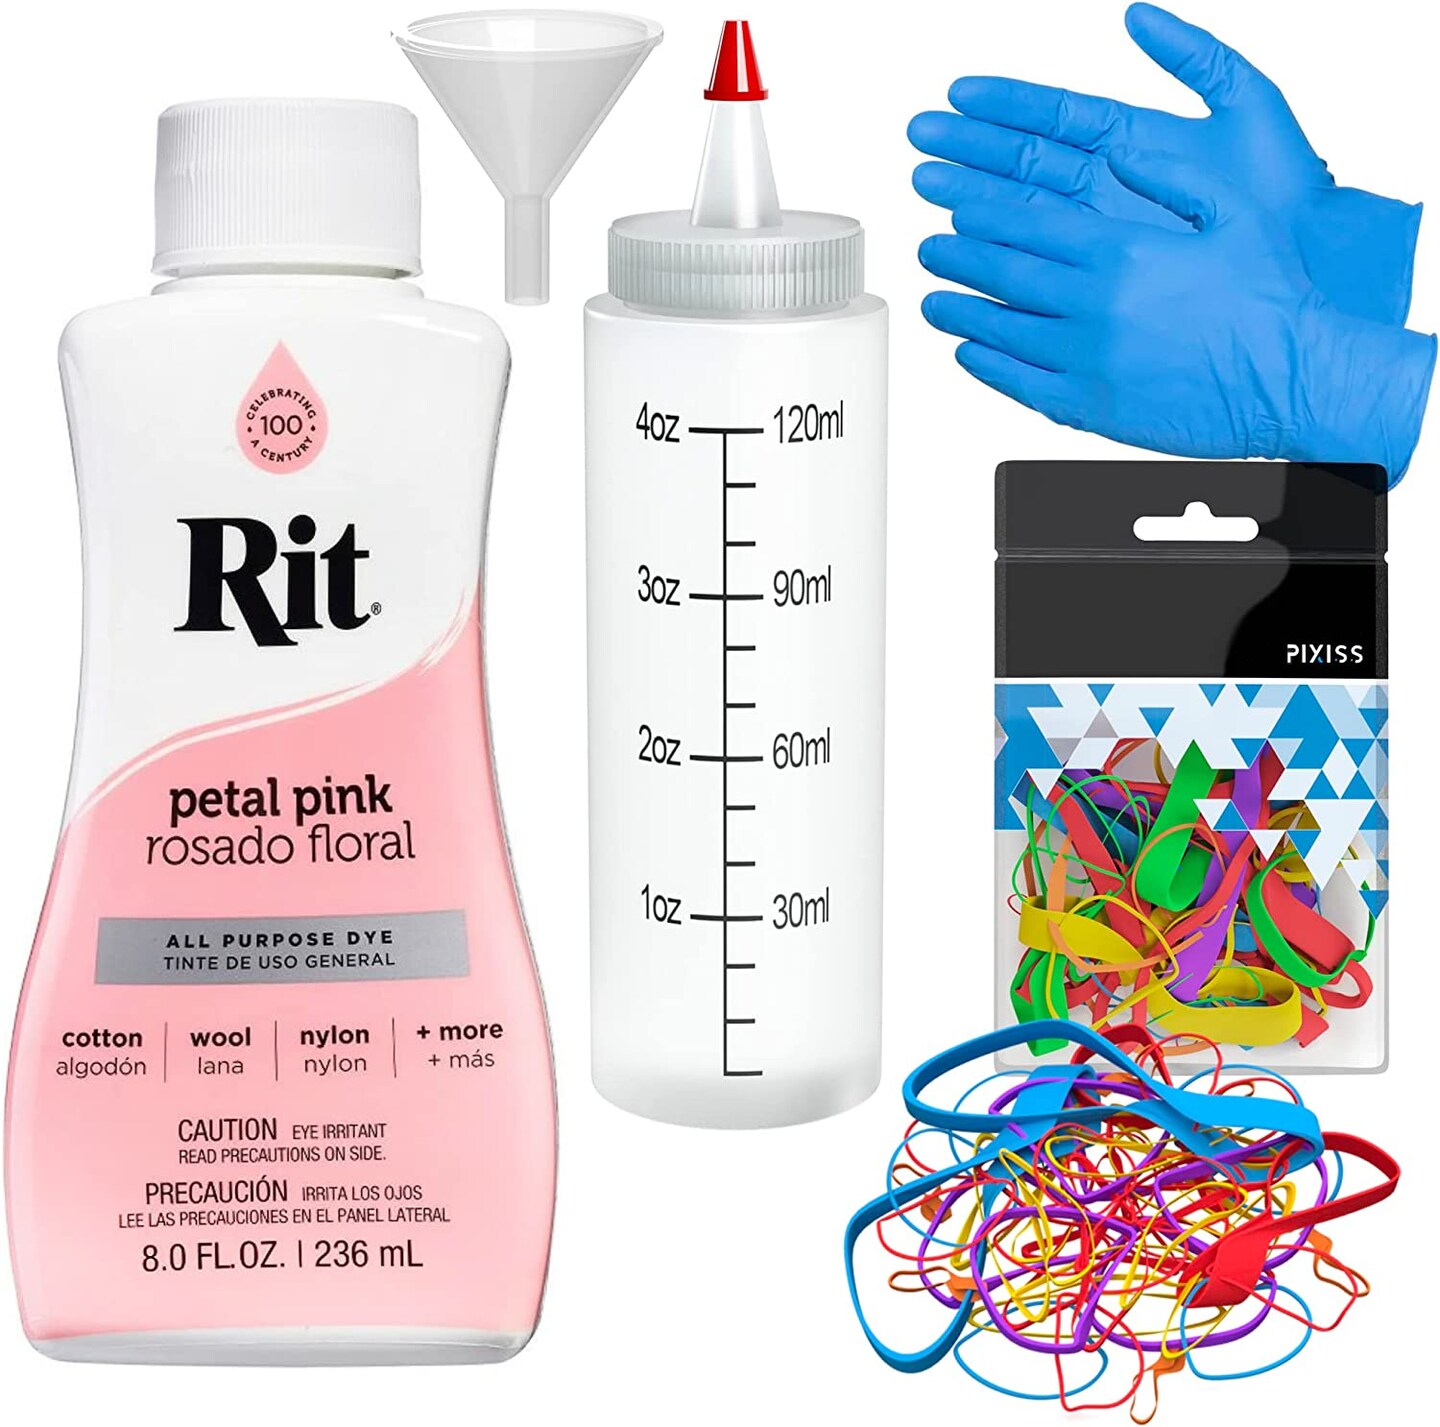 Rit Dye Liquid Petal Pink All-Purpose Dye 8oz, Pixiss Tie Dye Accessories  Bundle